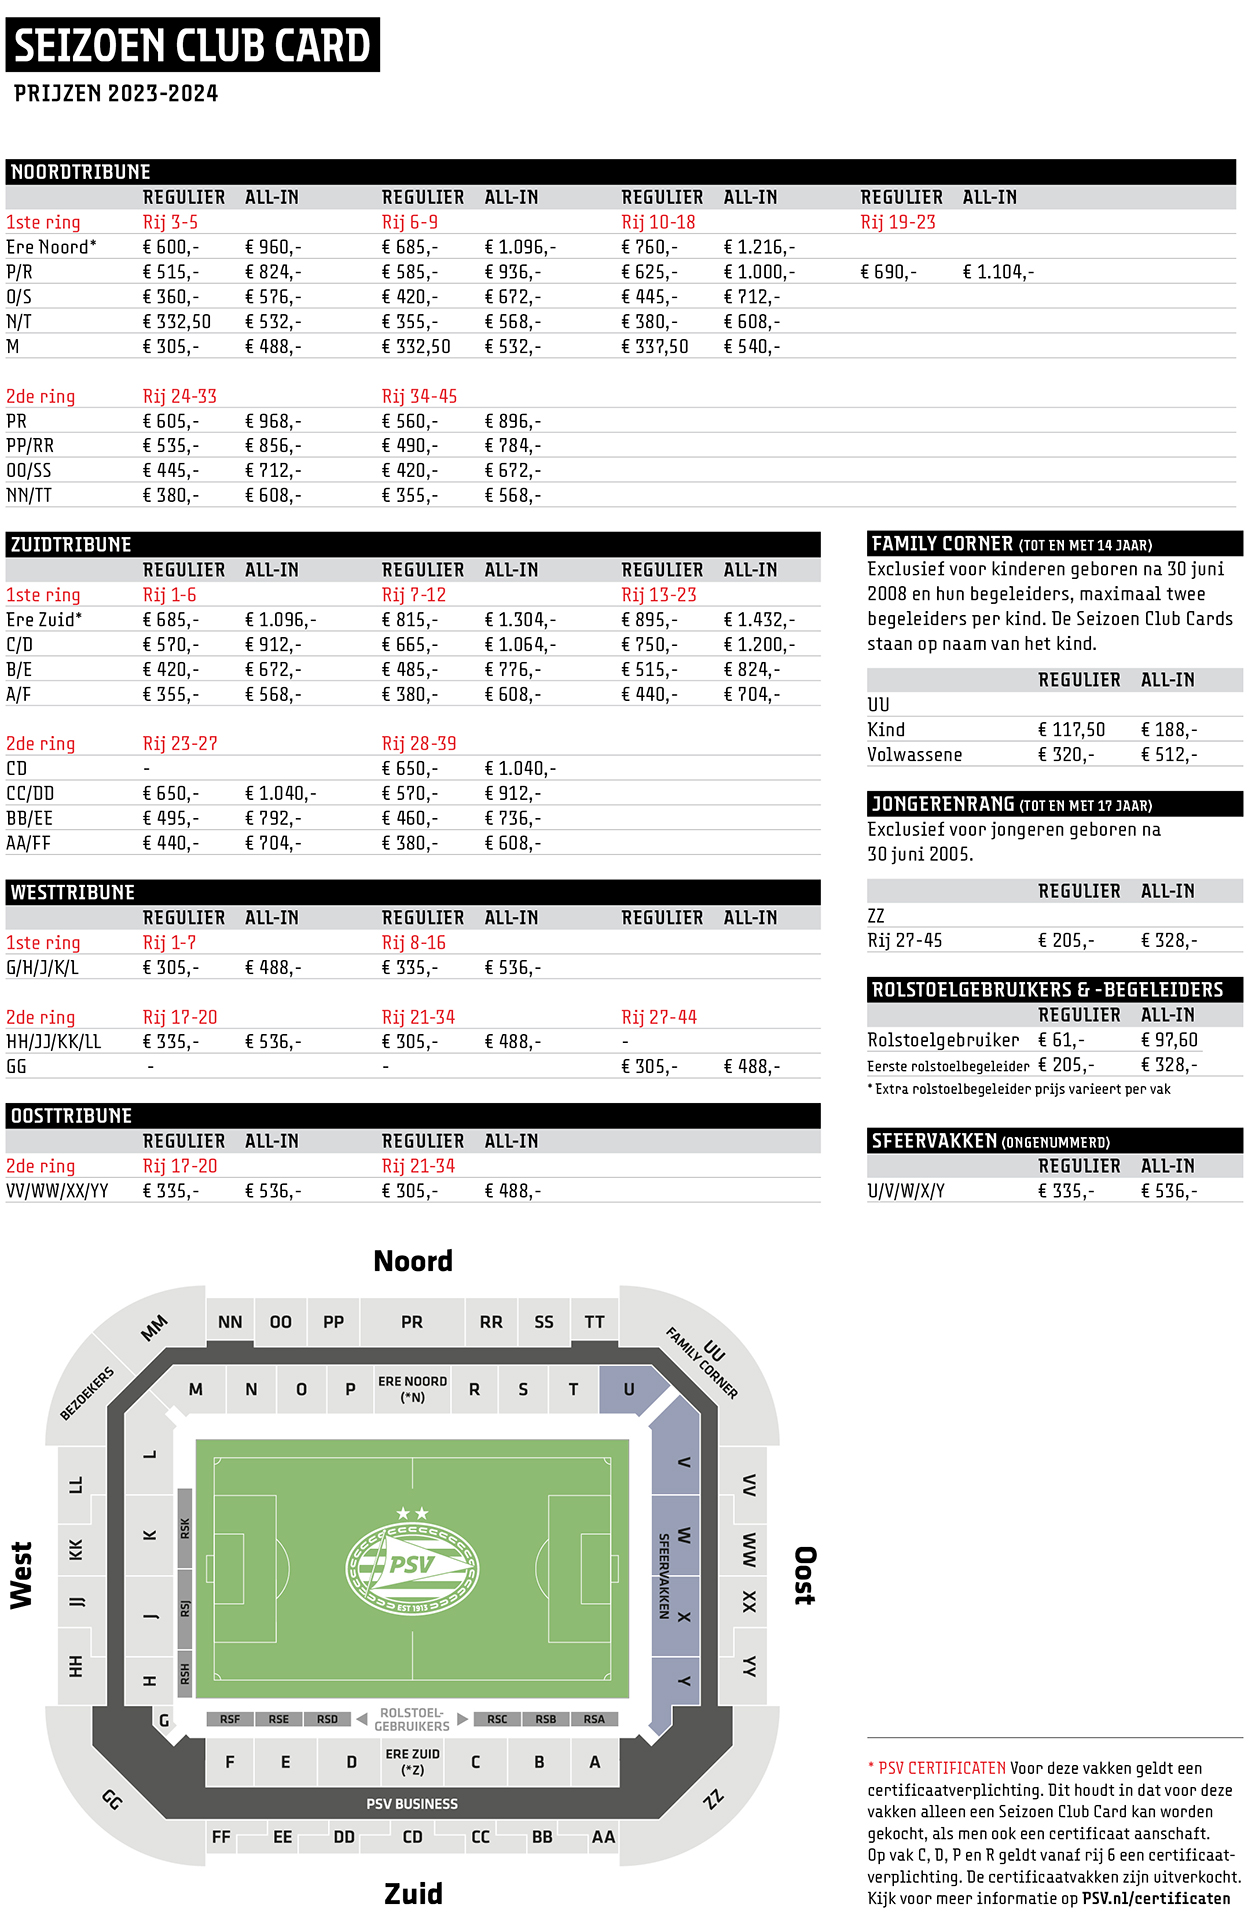 PSV Season Club Card Prices